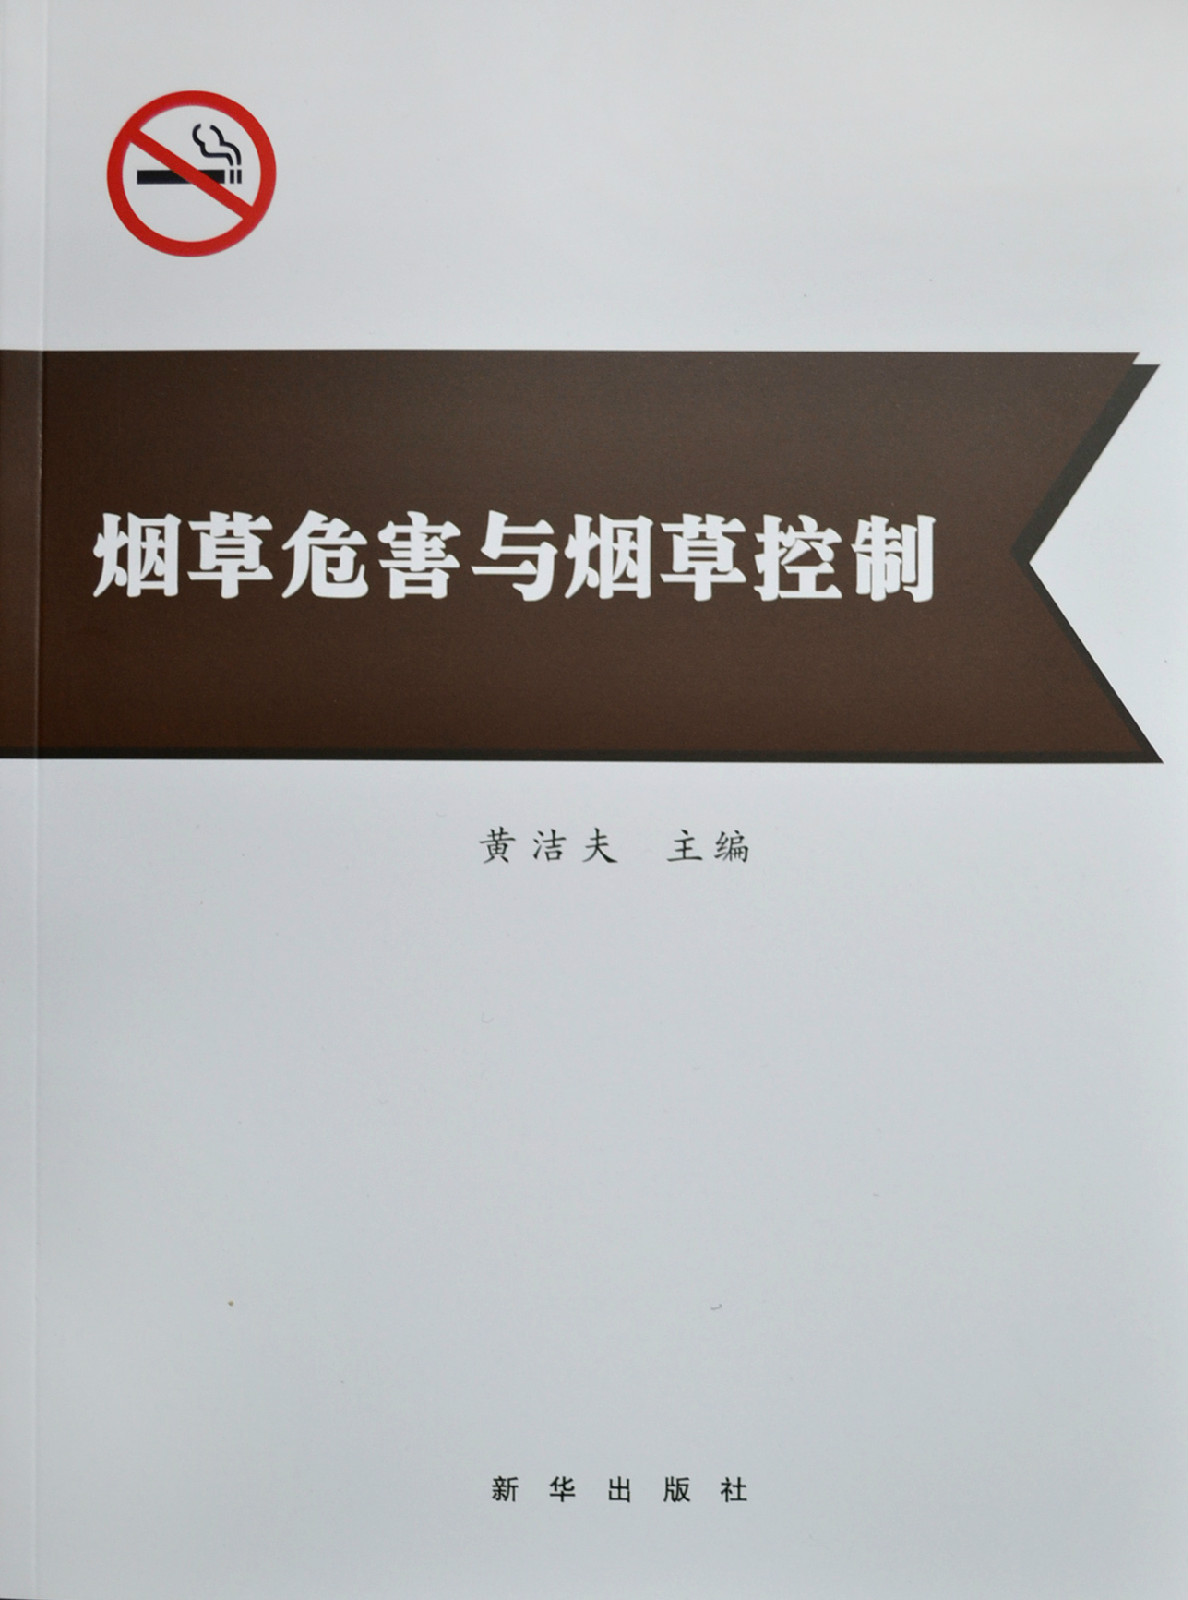 中國控制吸菸協會(中國控煙協會)